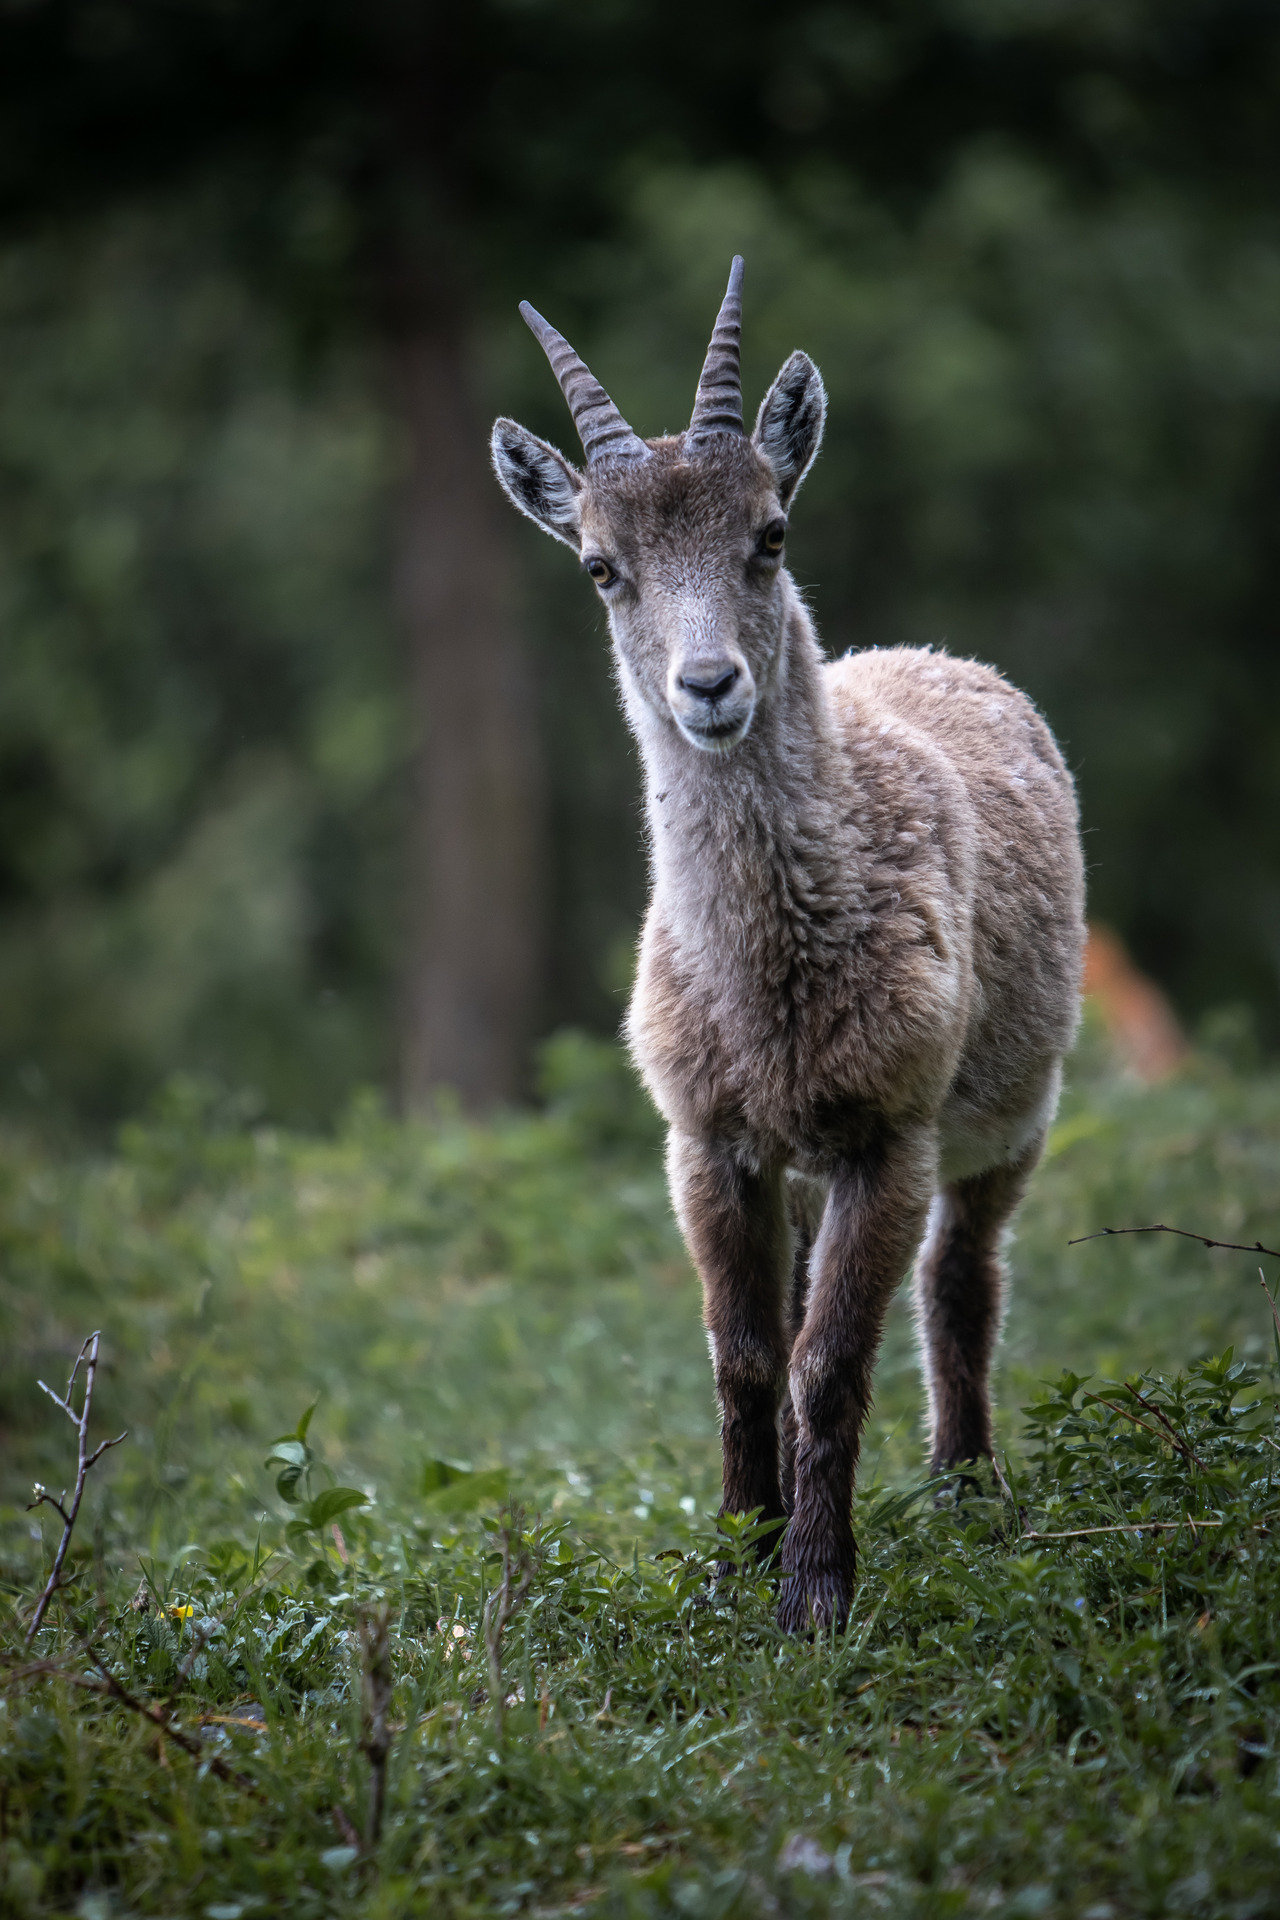 #steinbock #alpinegoat #mountaingoat #goat #alpineanimals #mammals #goatie, Yuri Merkulov